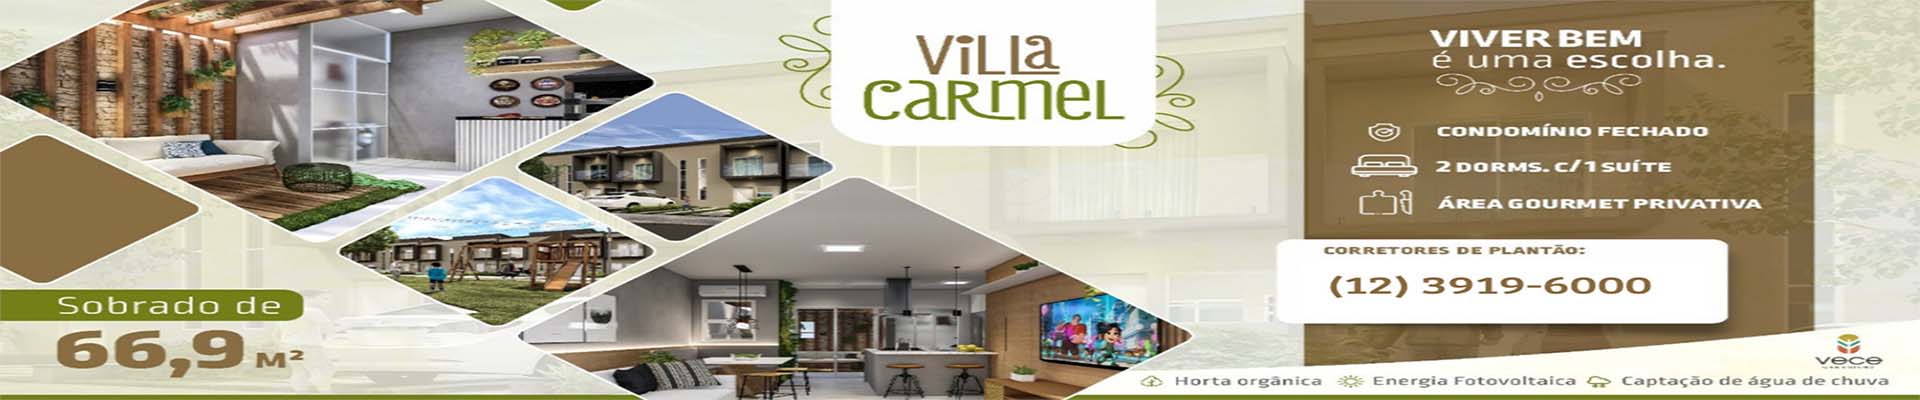 Vila Carmel